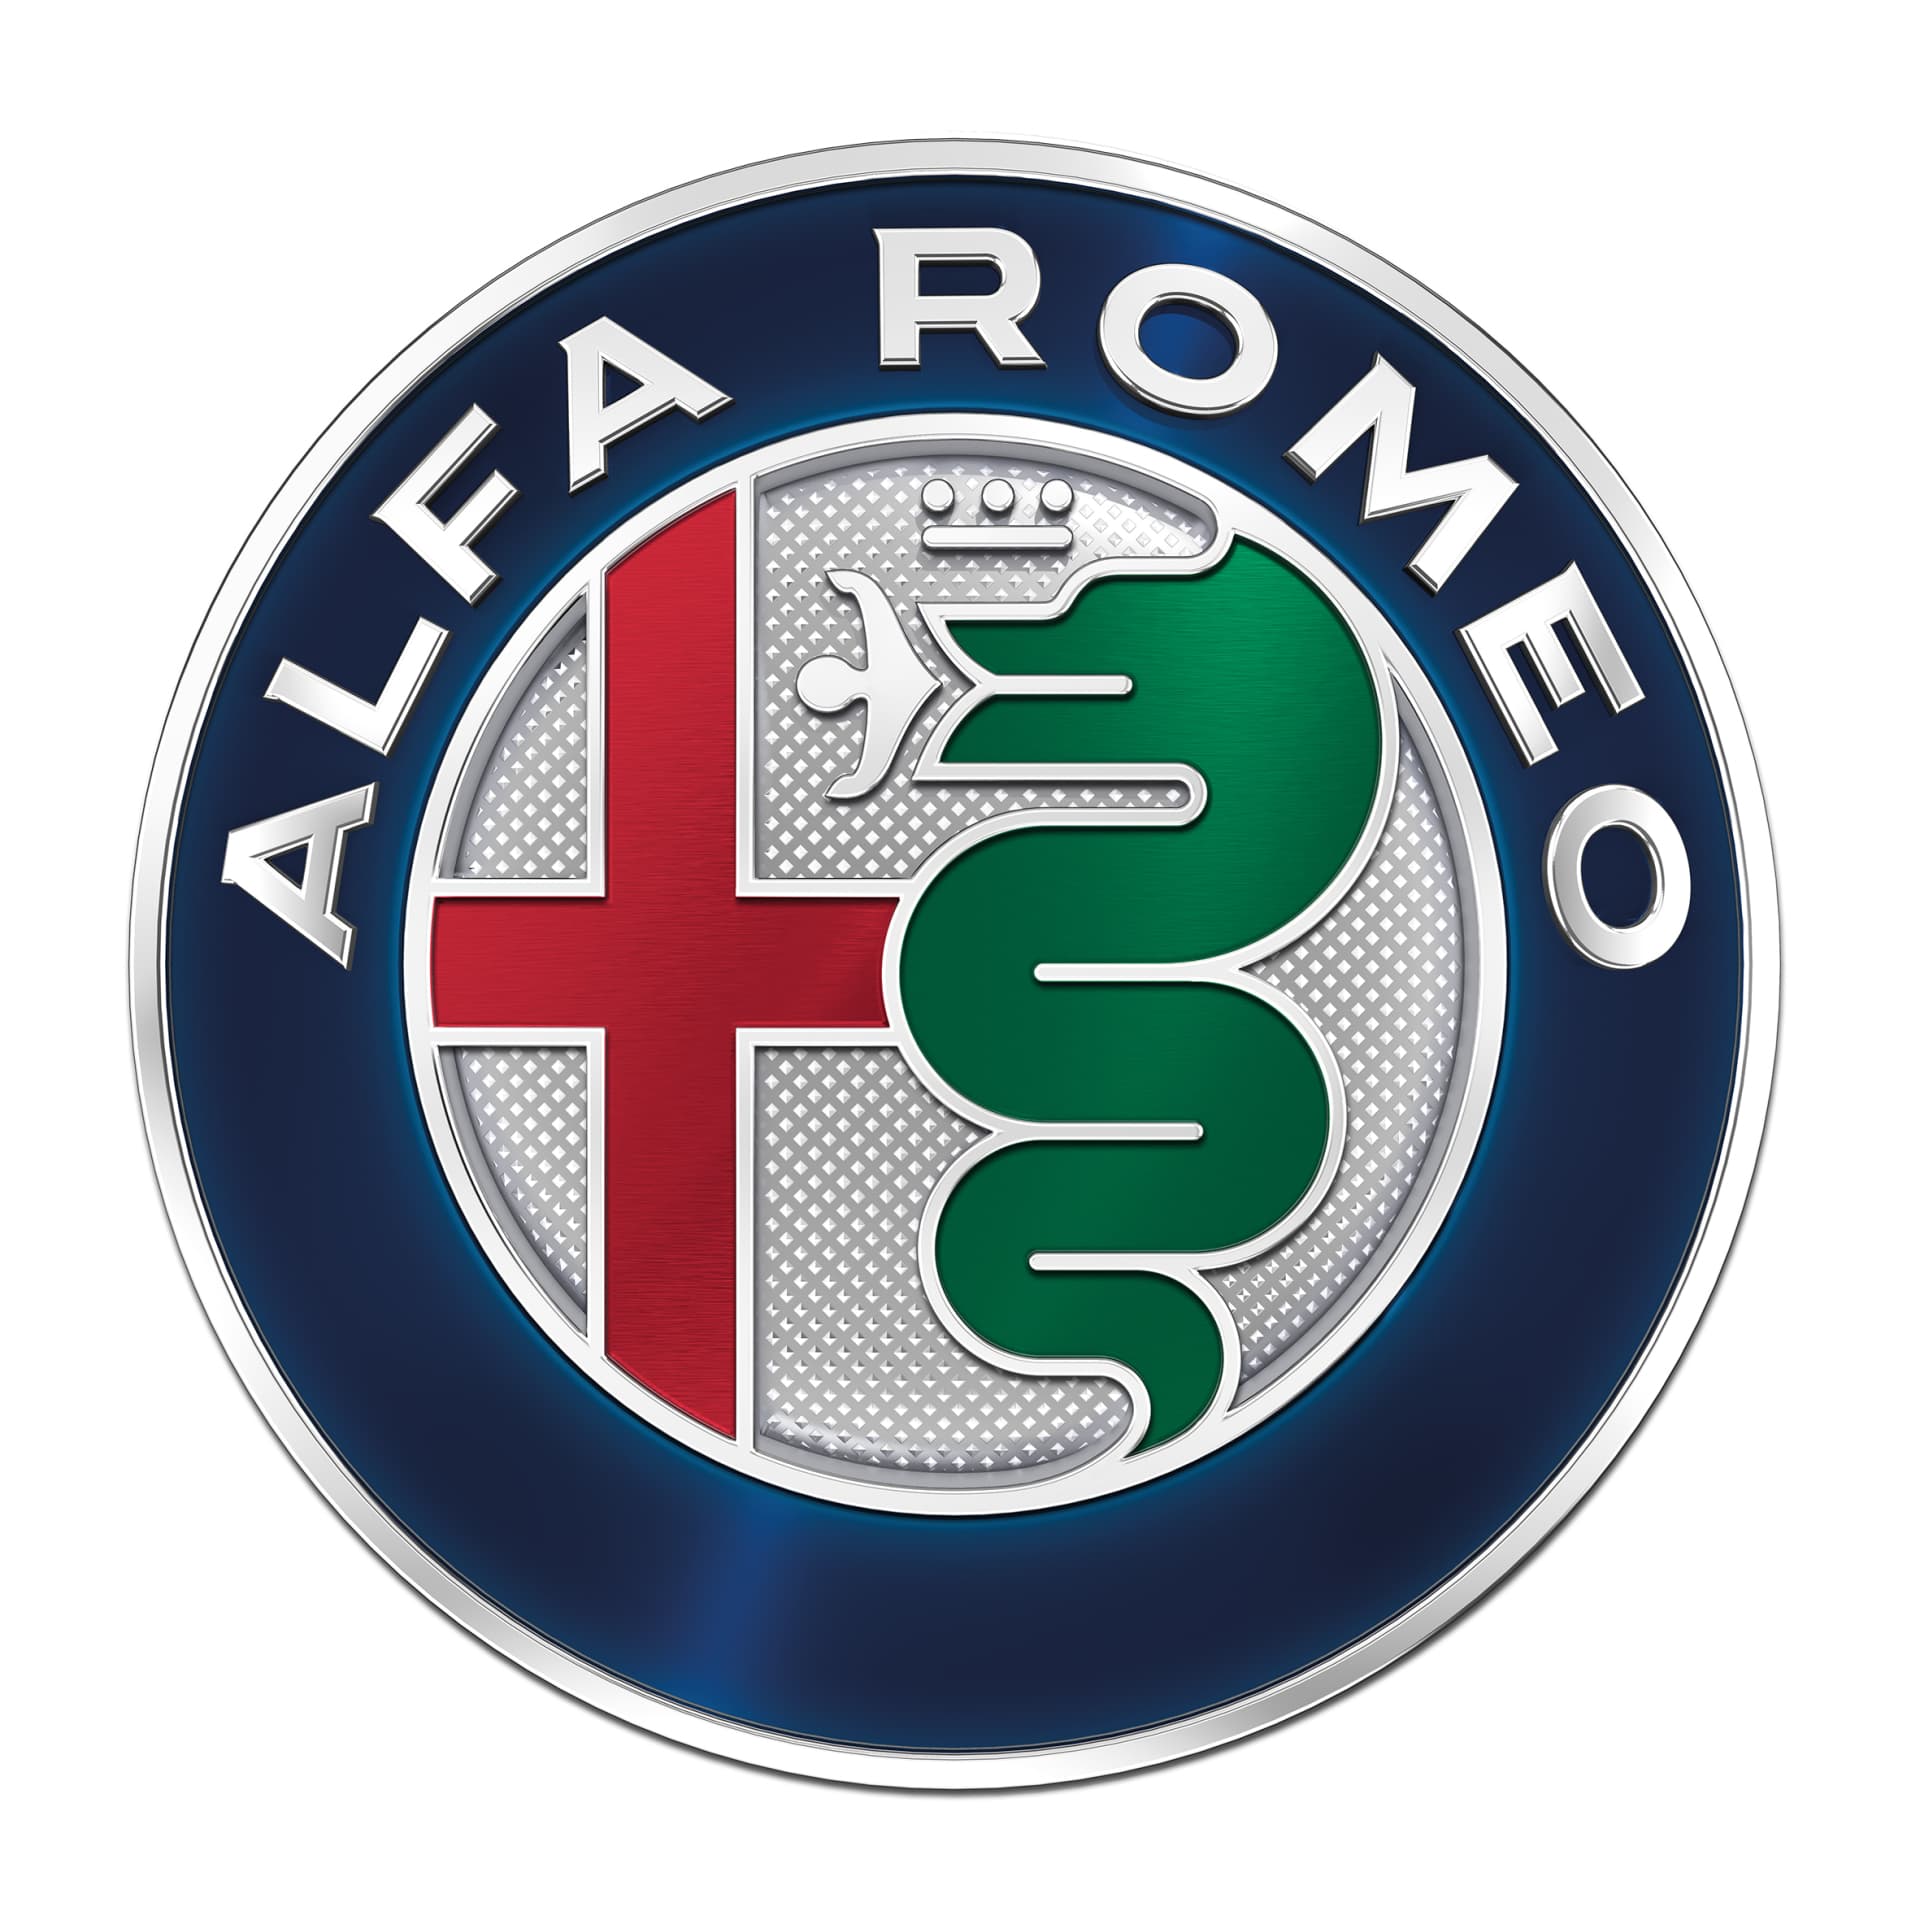 Los 110 años de historia del logo de Alfa Romeo